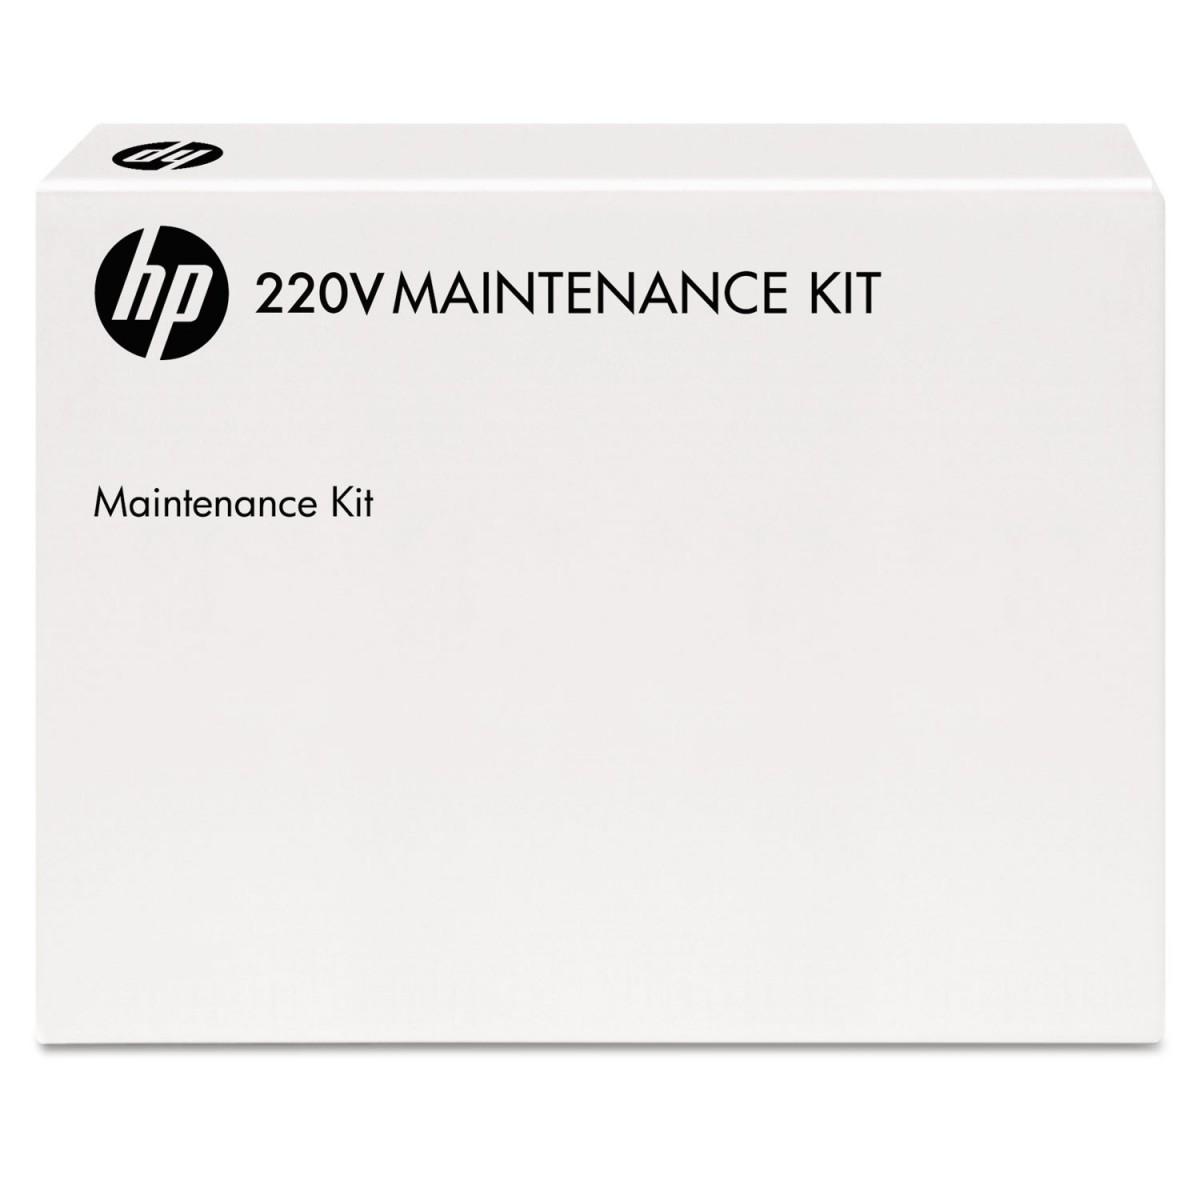 HP 220V Maintenance Kit - Maintenance kit - HP - 15 - 25 °C - -20 - 40 °C - 10 - 90%